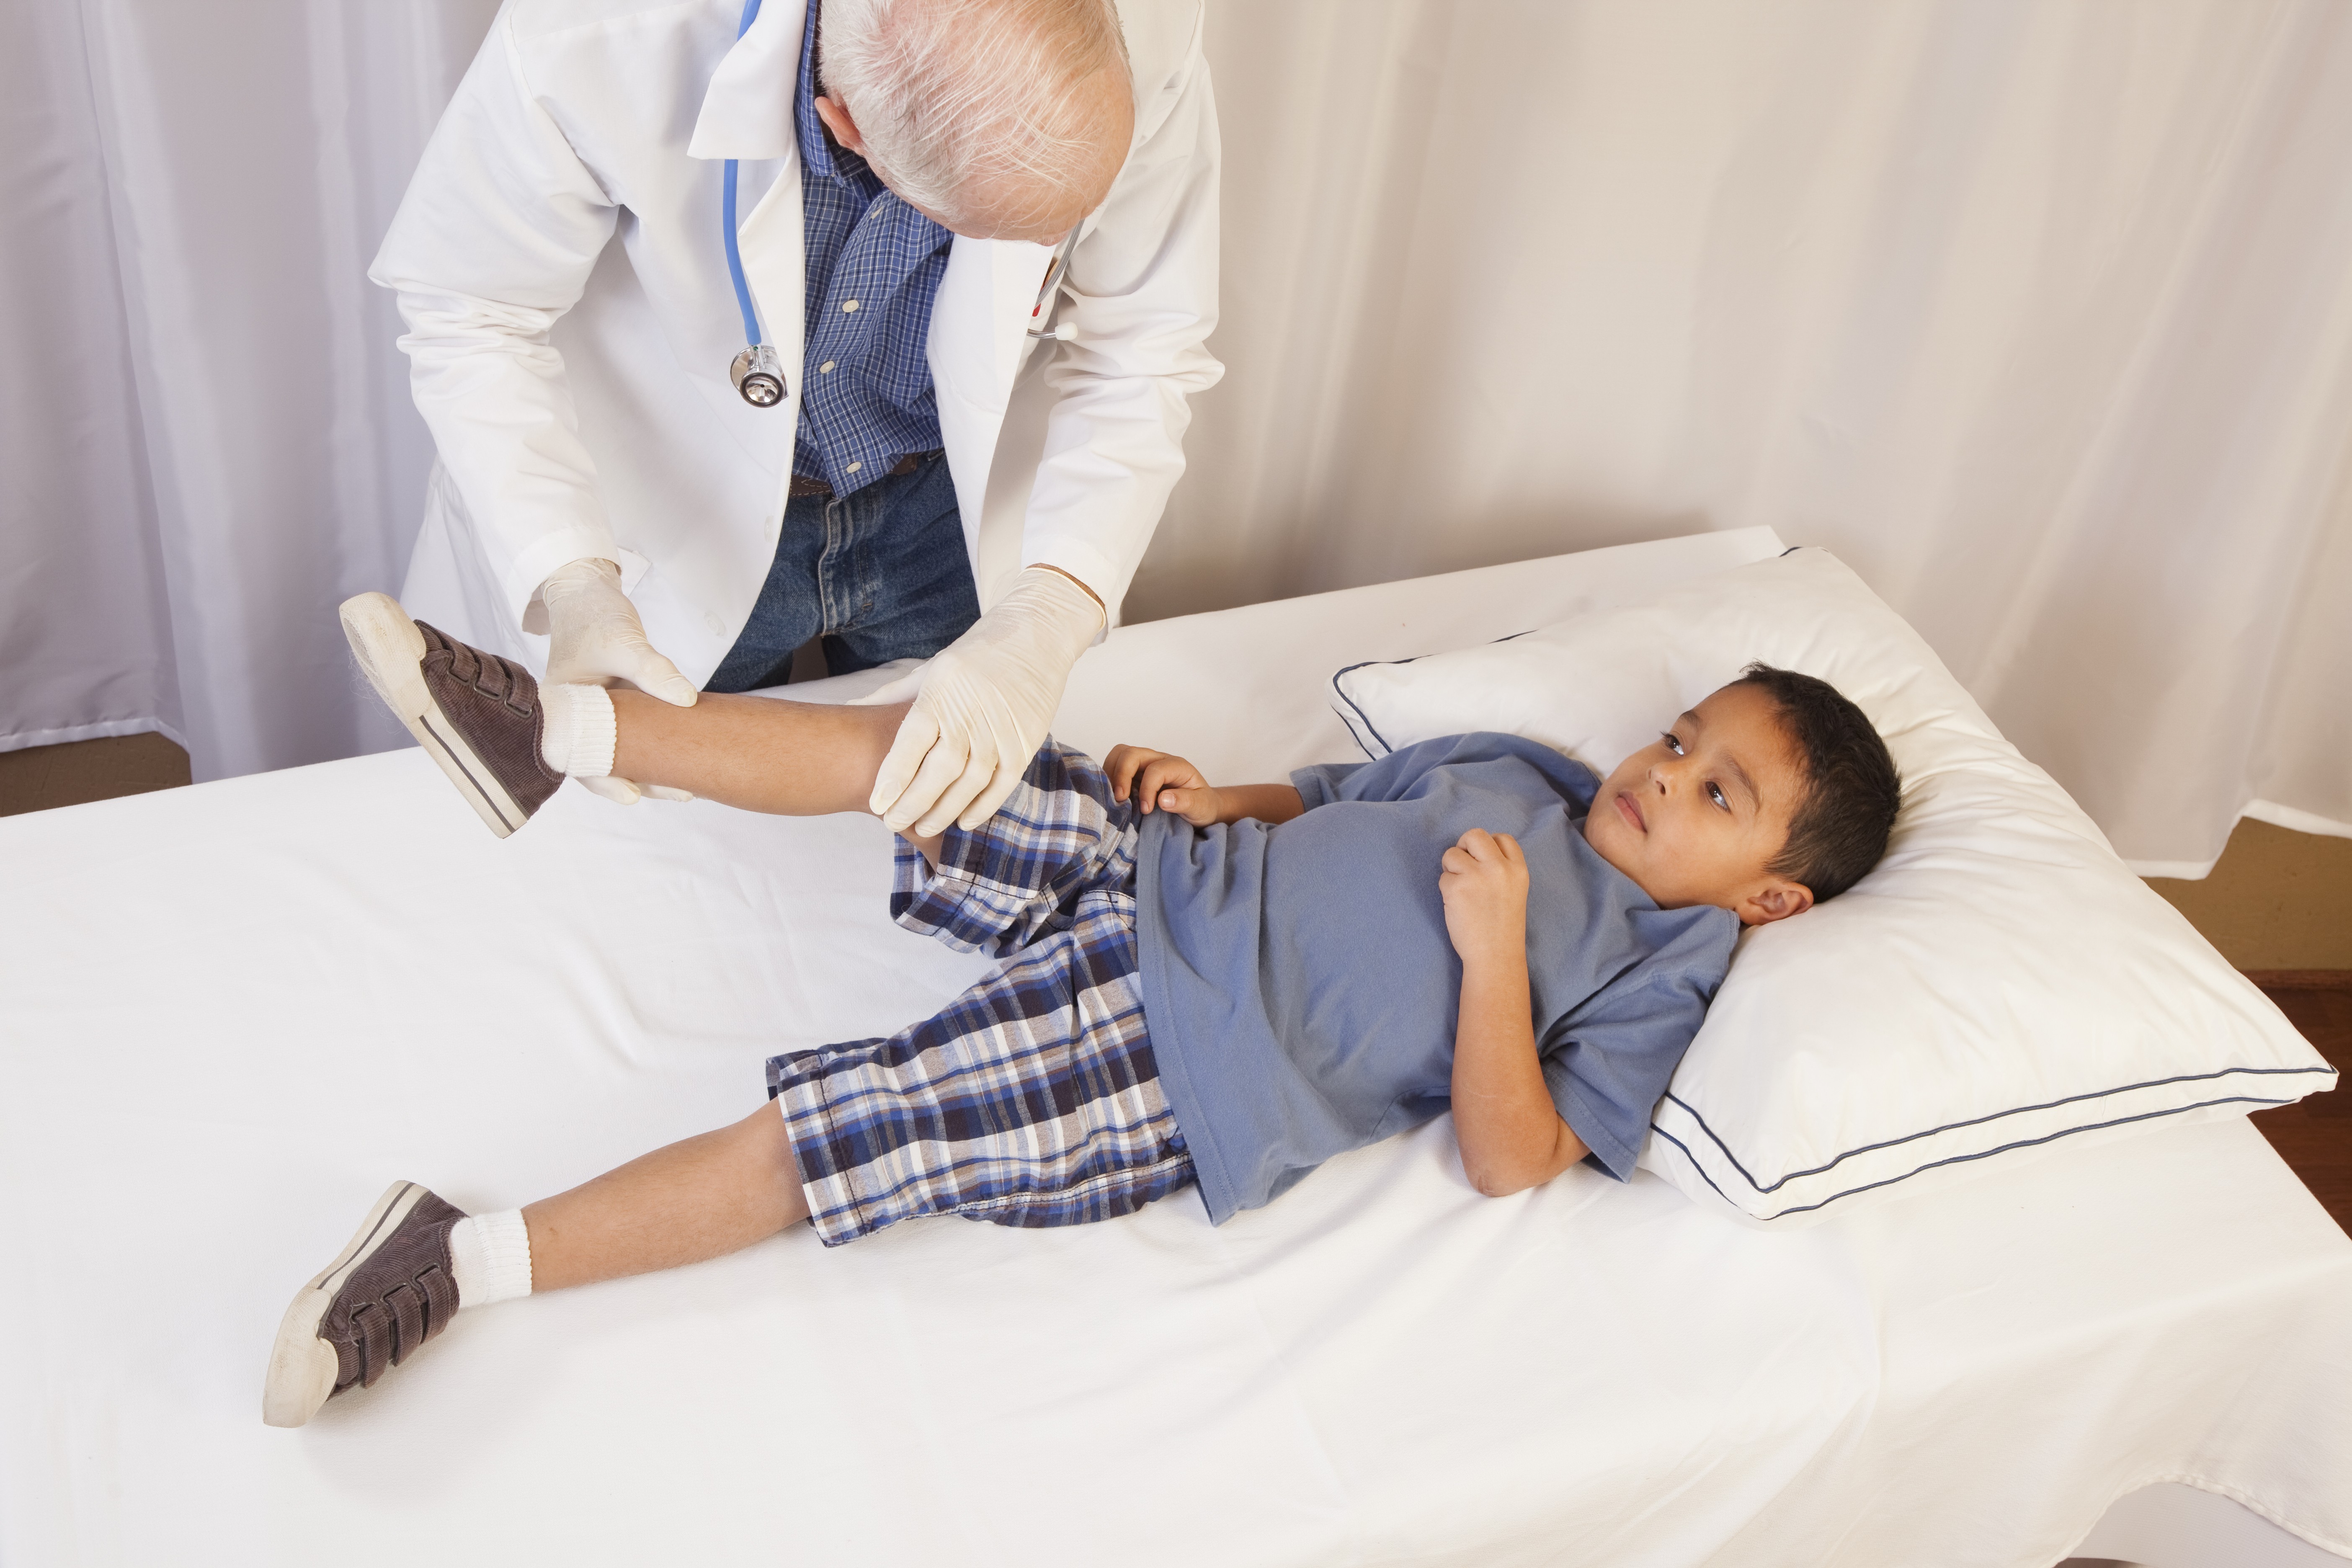 Médico examinando criança (Foto: Getty Images)